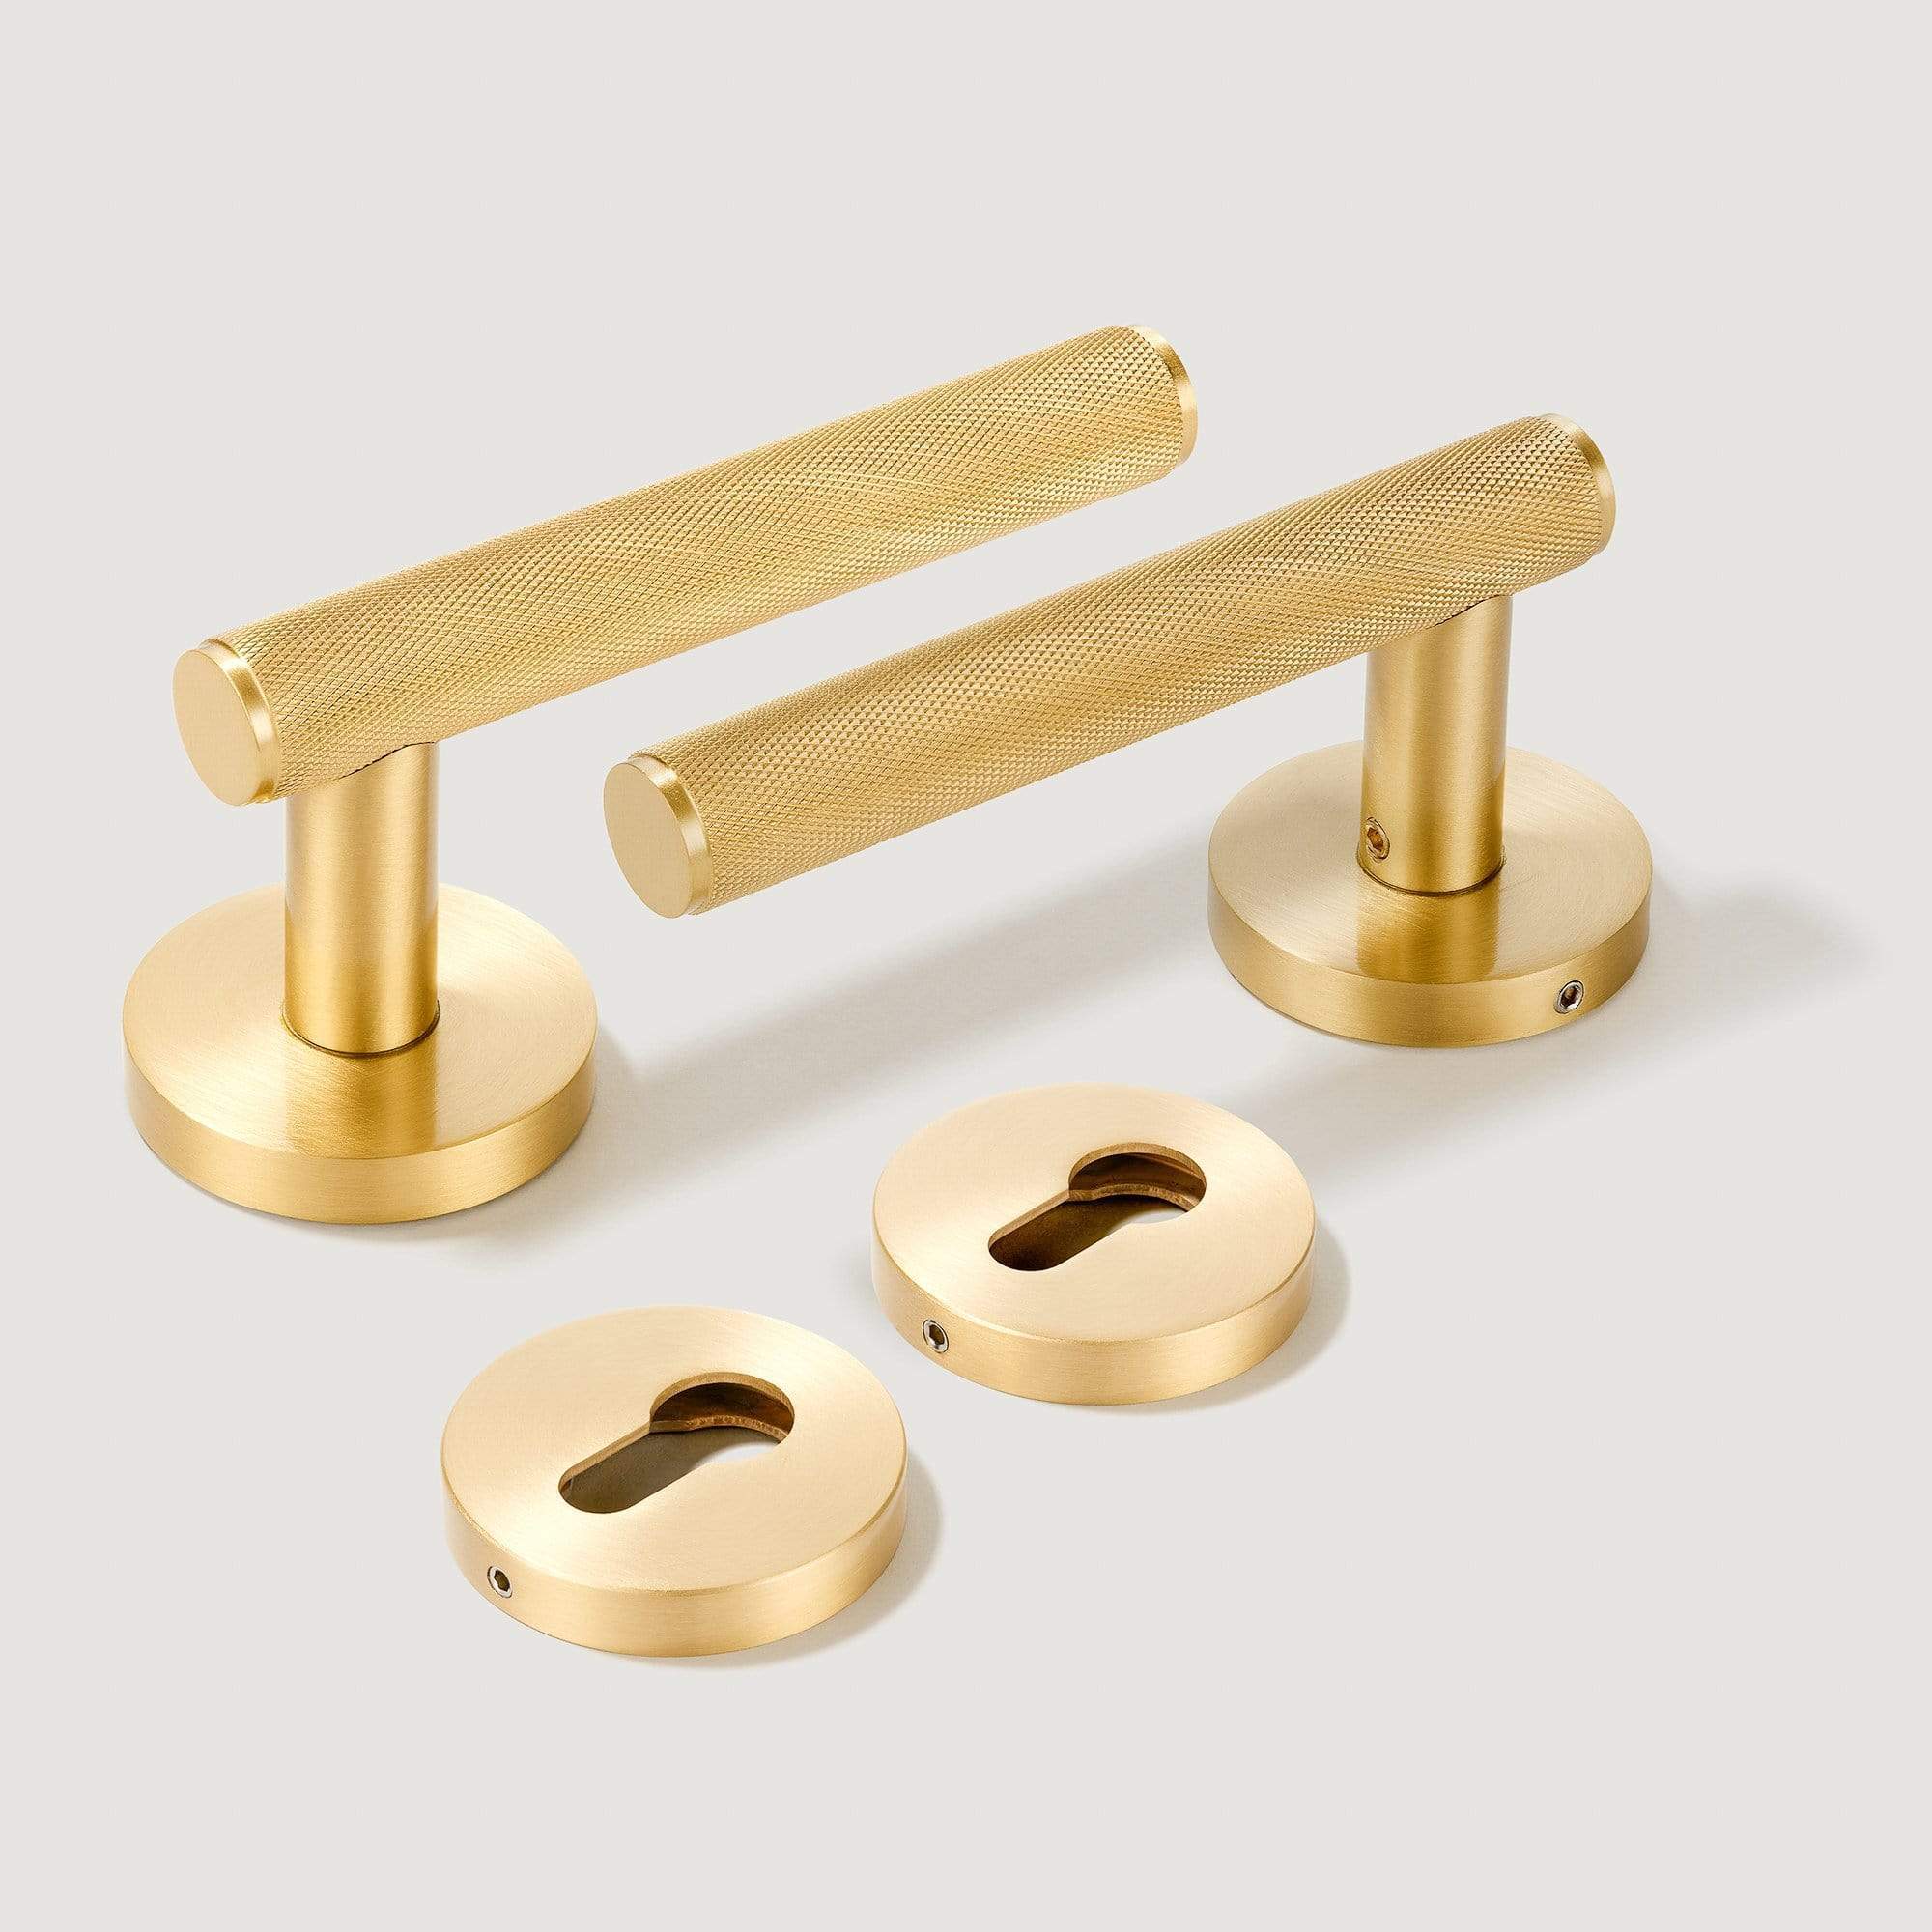 https://plankhardware.com/cdn/shop/products/plank-hardware-door-lever-handles-morrison-door-lever-handle-brass-135mm-28238726103138_2048x2048.jpg?v=1697641655